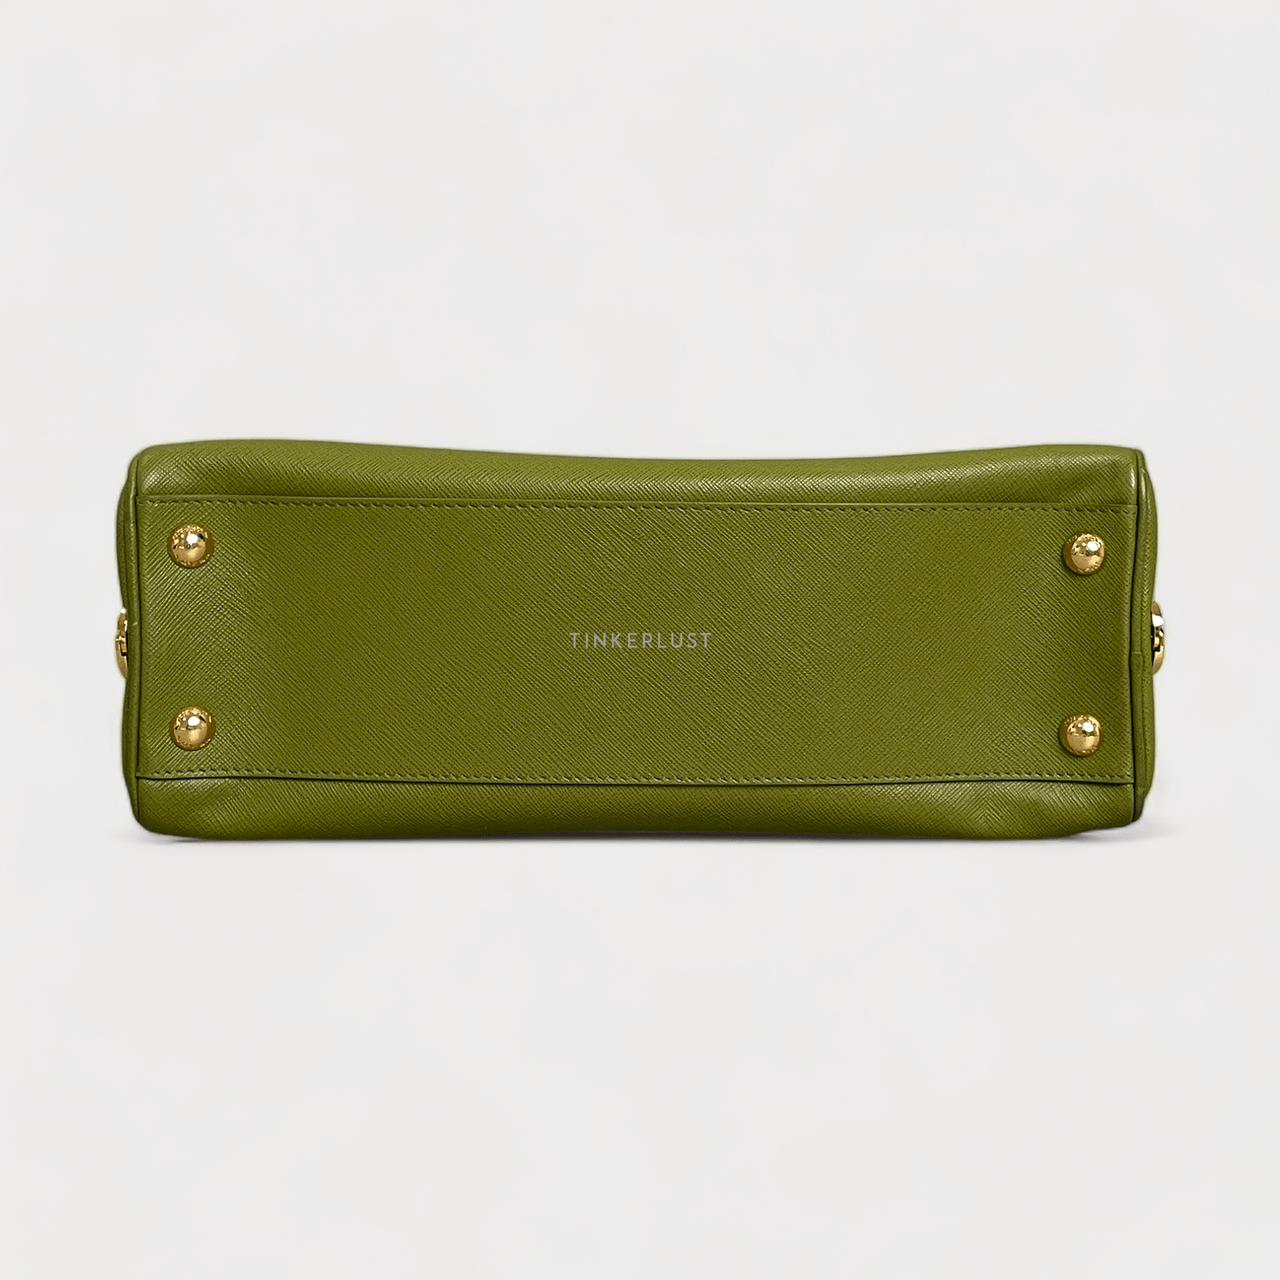 Prada Saffiano Lux Leather Frame Top Handle Edera Handbag